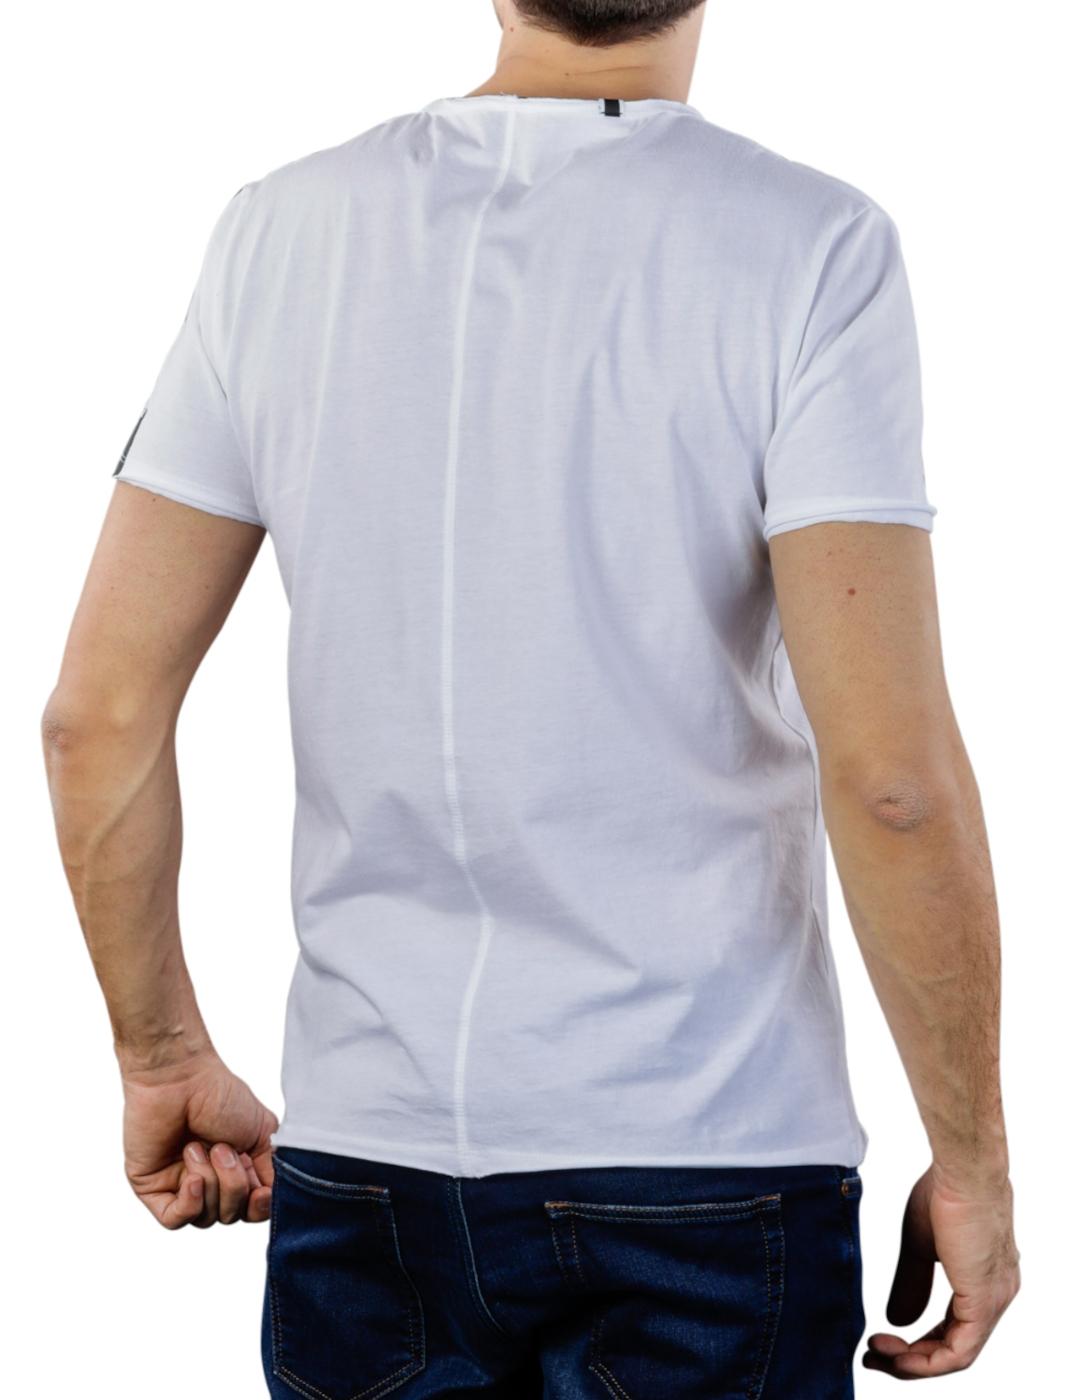 Camiseta Replay cuello en 'V' en color blanco para hombre-y